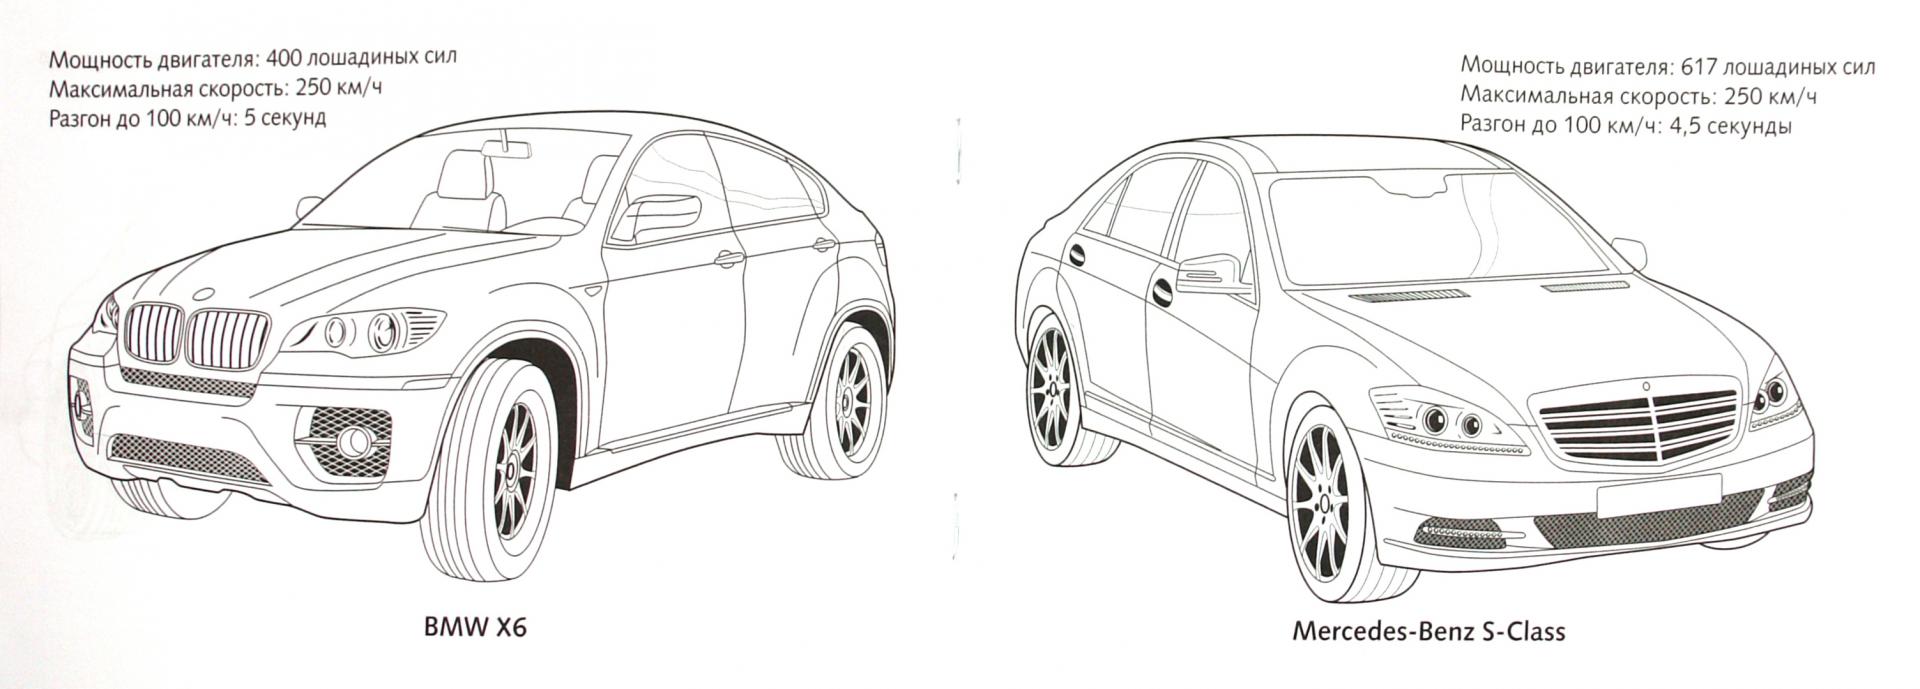 Иллюстрация 1 из 9 для Автомобили класса Люкс | Лабиринт - книги. Источник: Лабиринт